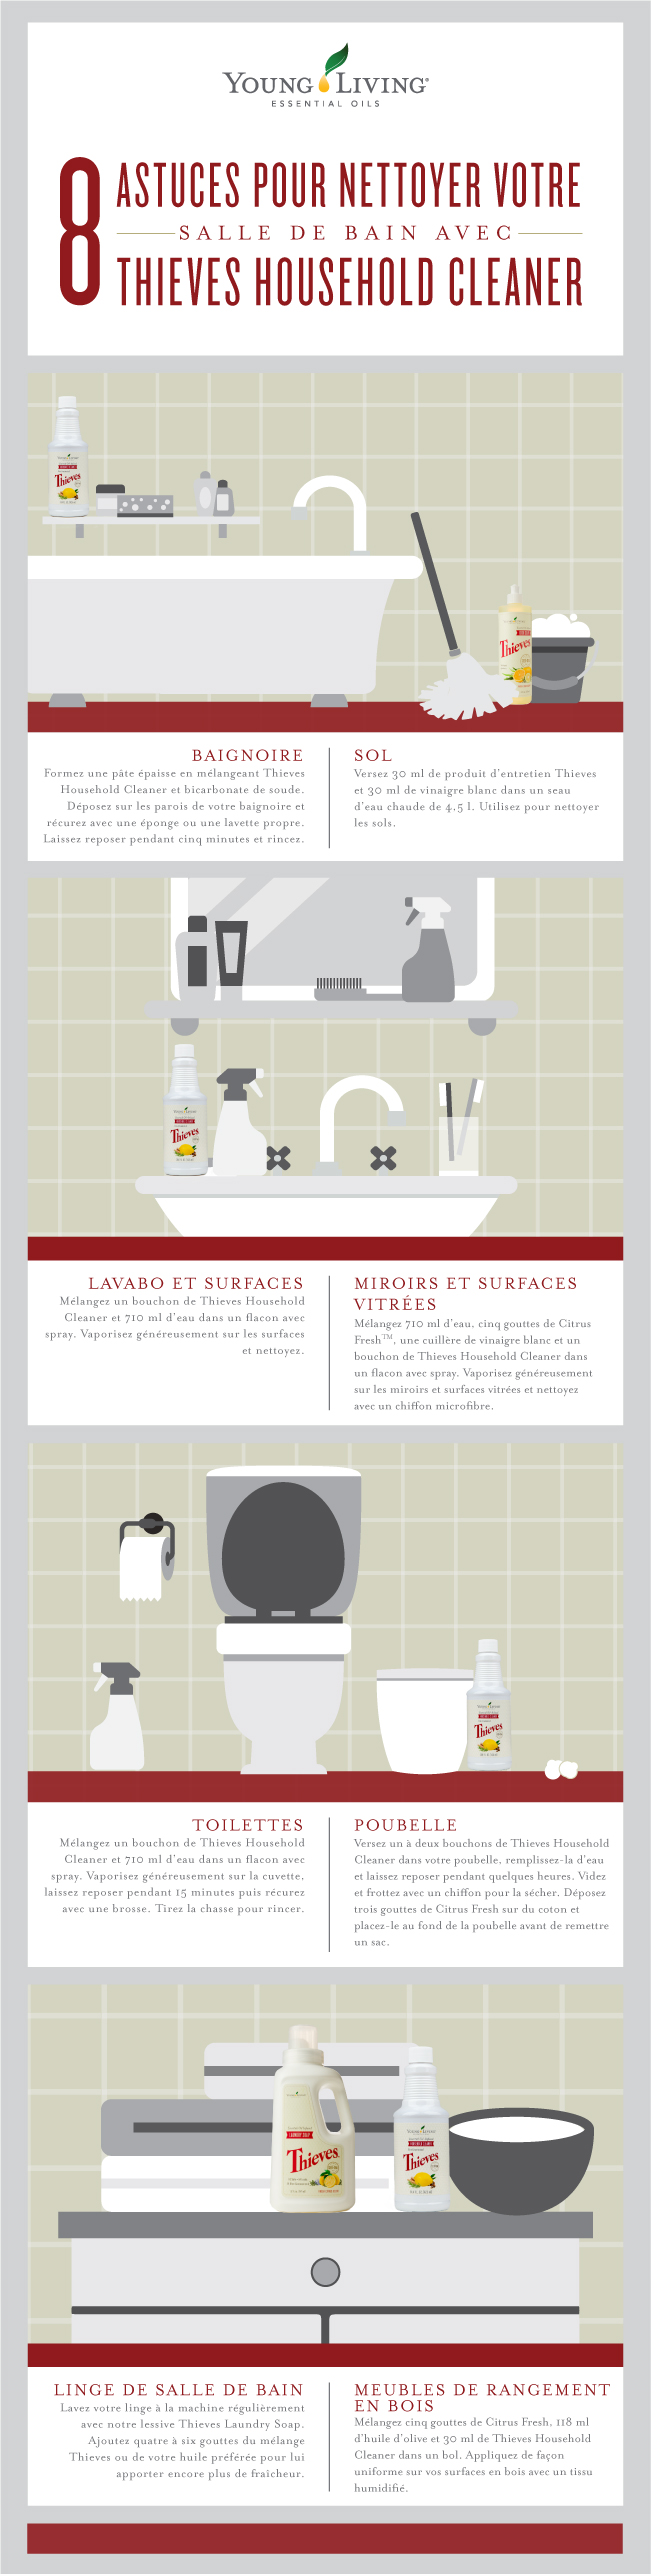 8 astuces pour nettoyer votre salle de bain avec Thieves Household Cleaner